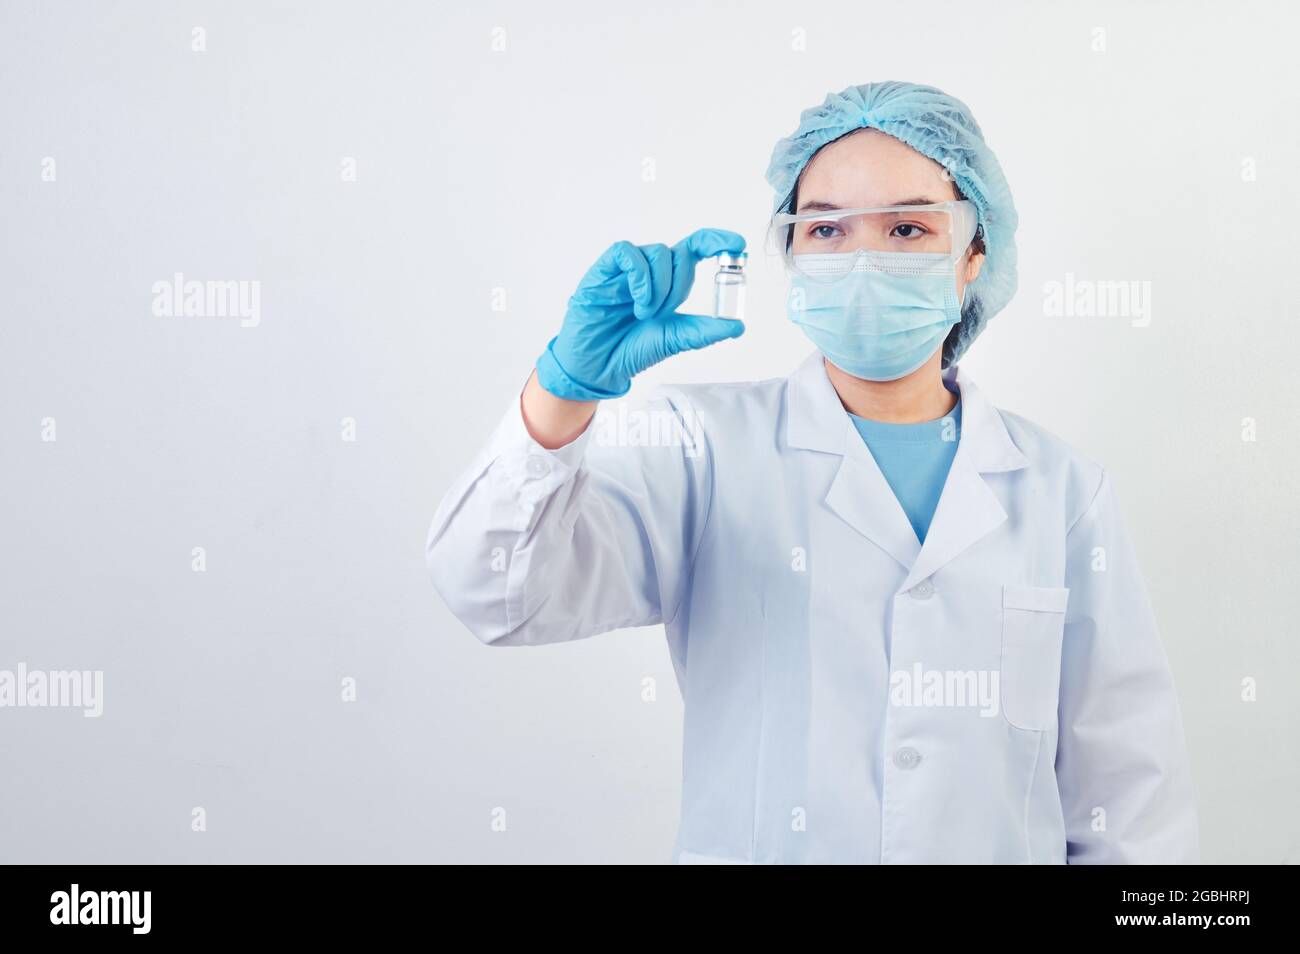 Medico o scienziato professionista che tiene in mano il flaconcino di vaccino Covid-19 in laboratorio per il trattamento con guanti da maschera e camice da laboratorio su sfondo bianco Foto Stock